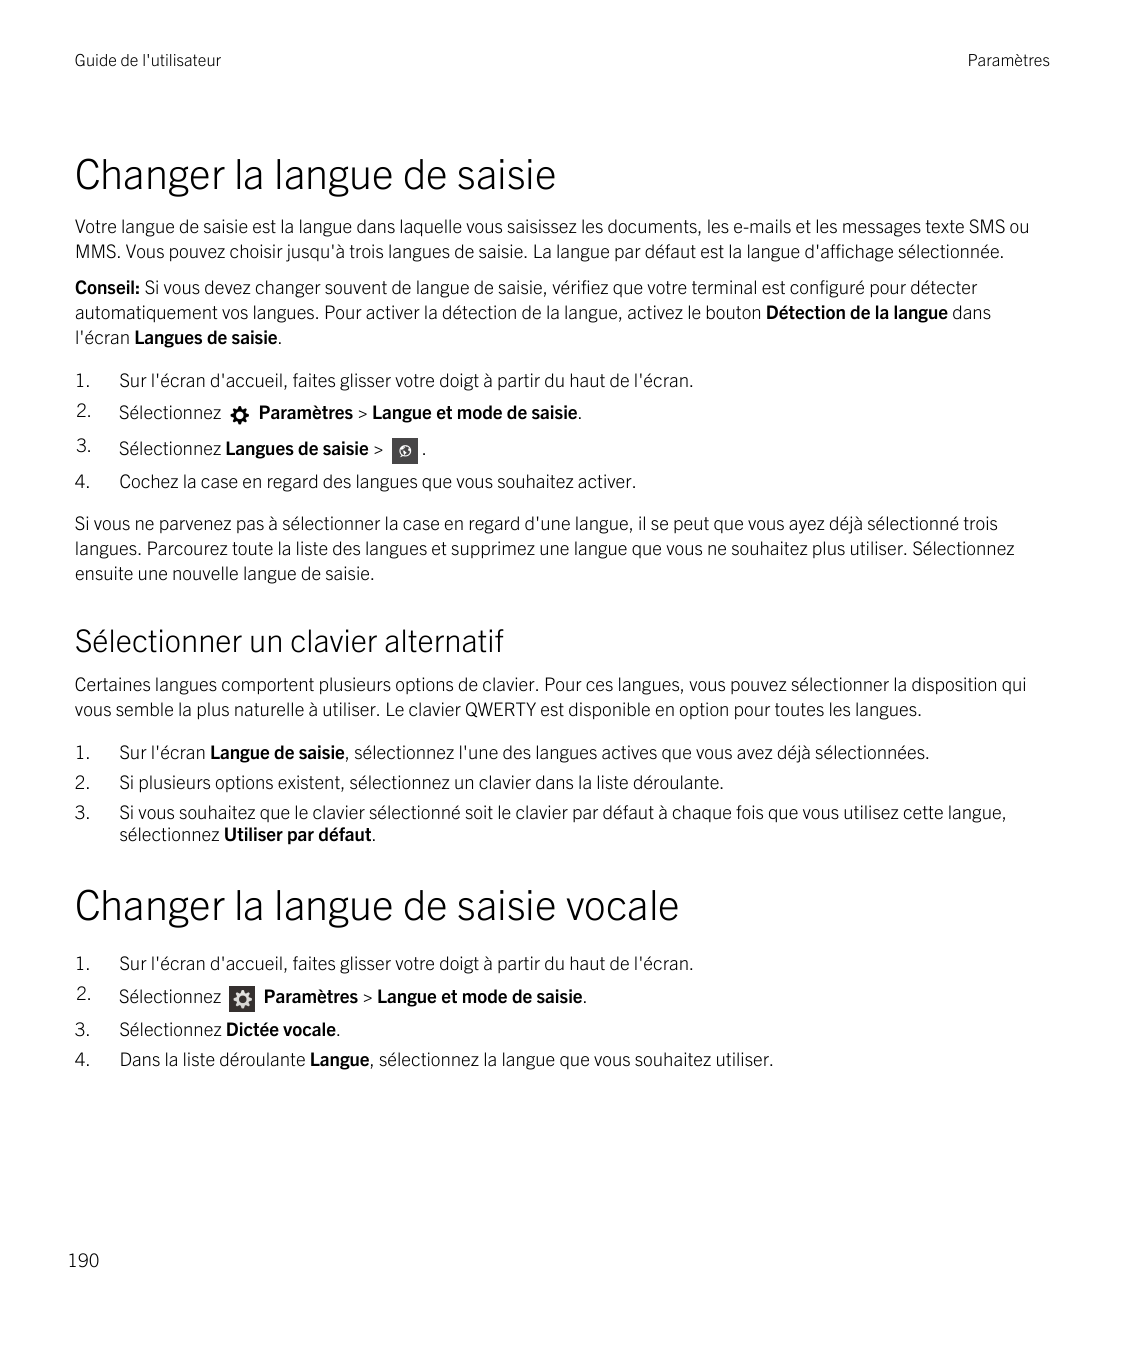 Guide de l'utilisateurParamètresChanger la langue de saisieVotre langue de saisie est la langue dans laquelle vous saisissez les